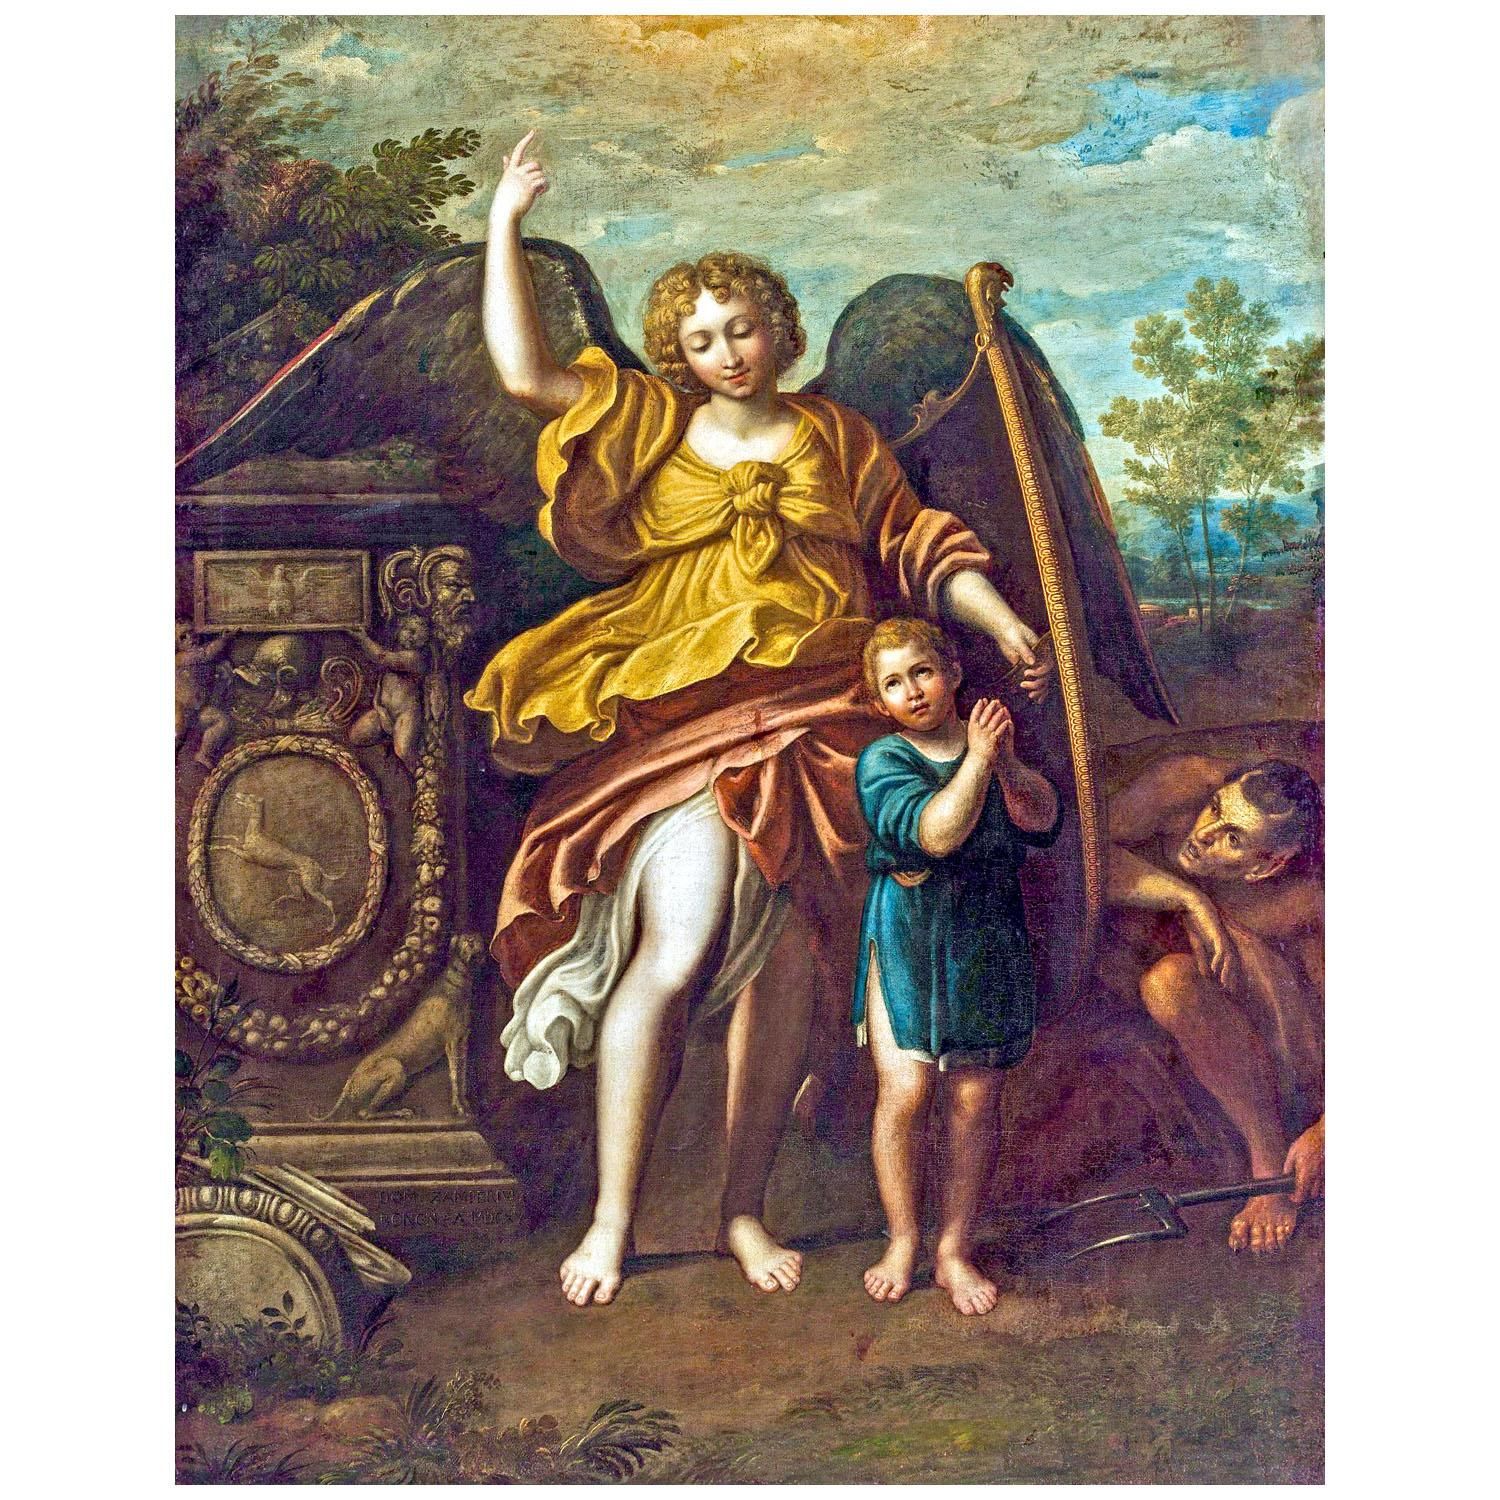 Domenichino. Angelo custode. 1615. Private collection